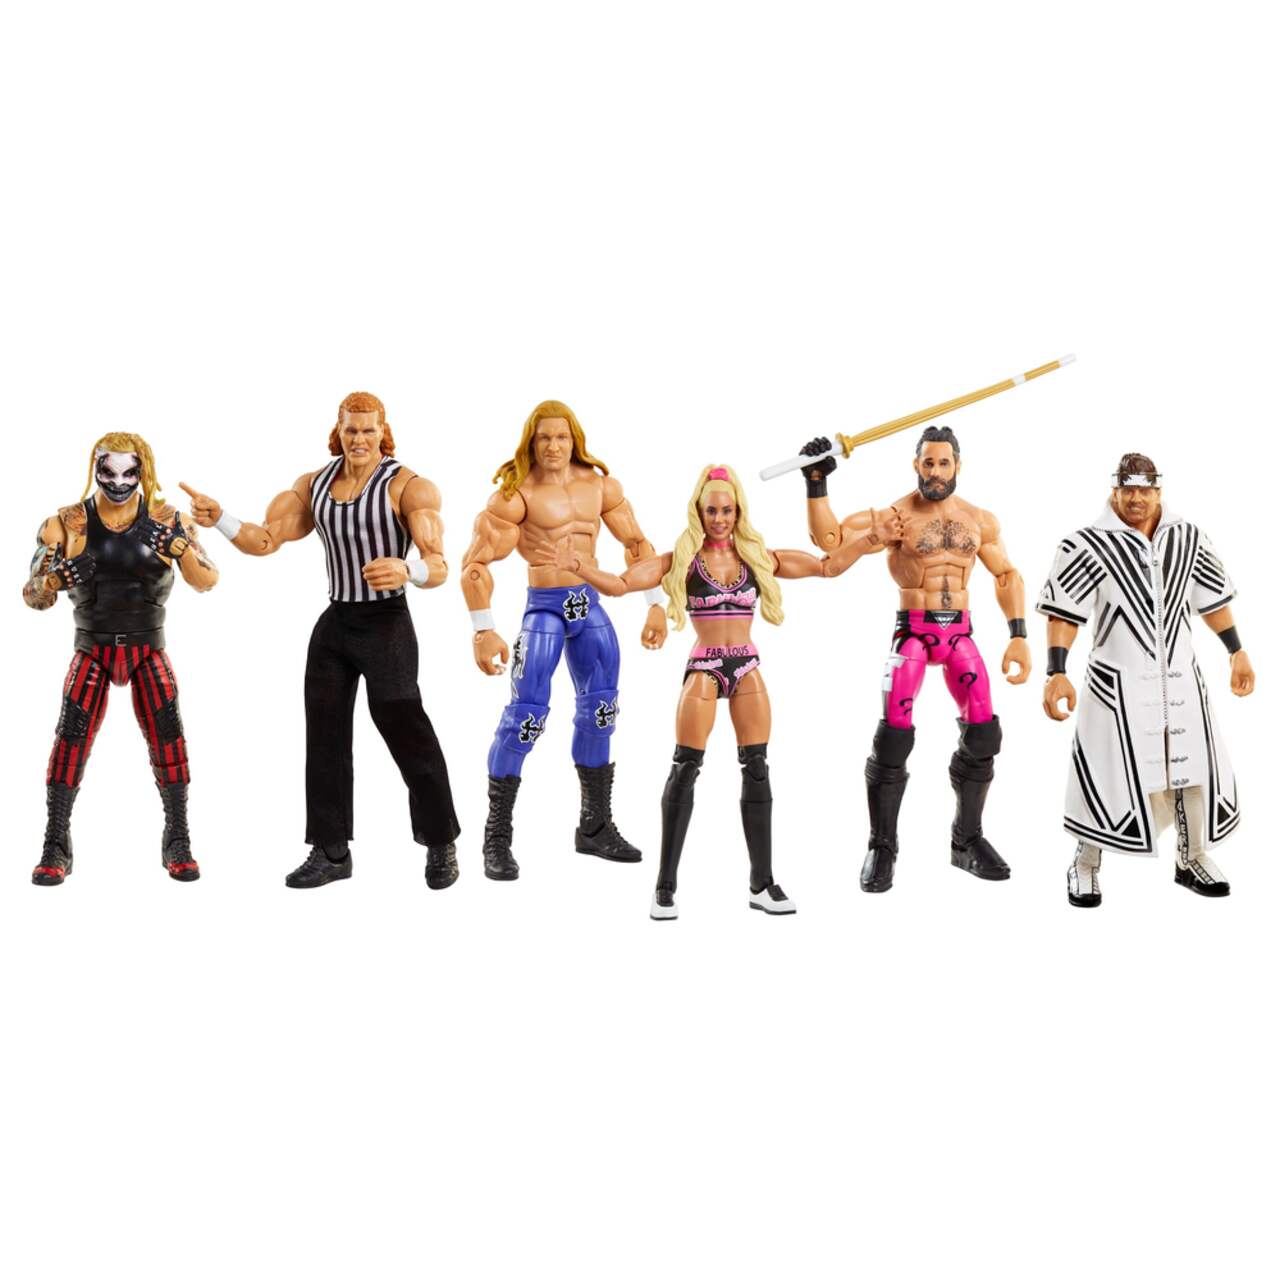 Figurine WWE Collection Elite, choix varié, paq. 4, 8 ans et plus